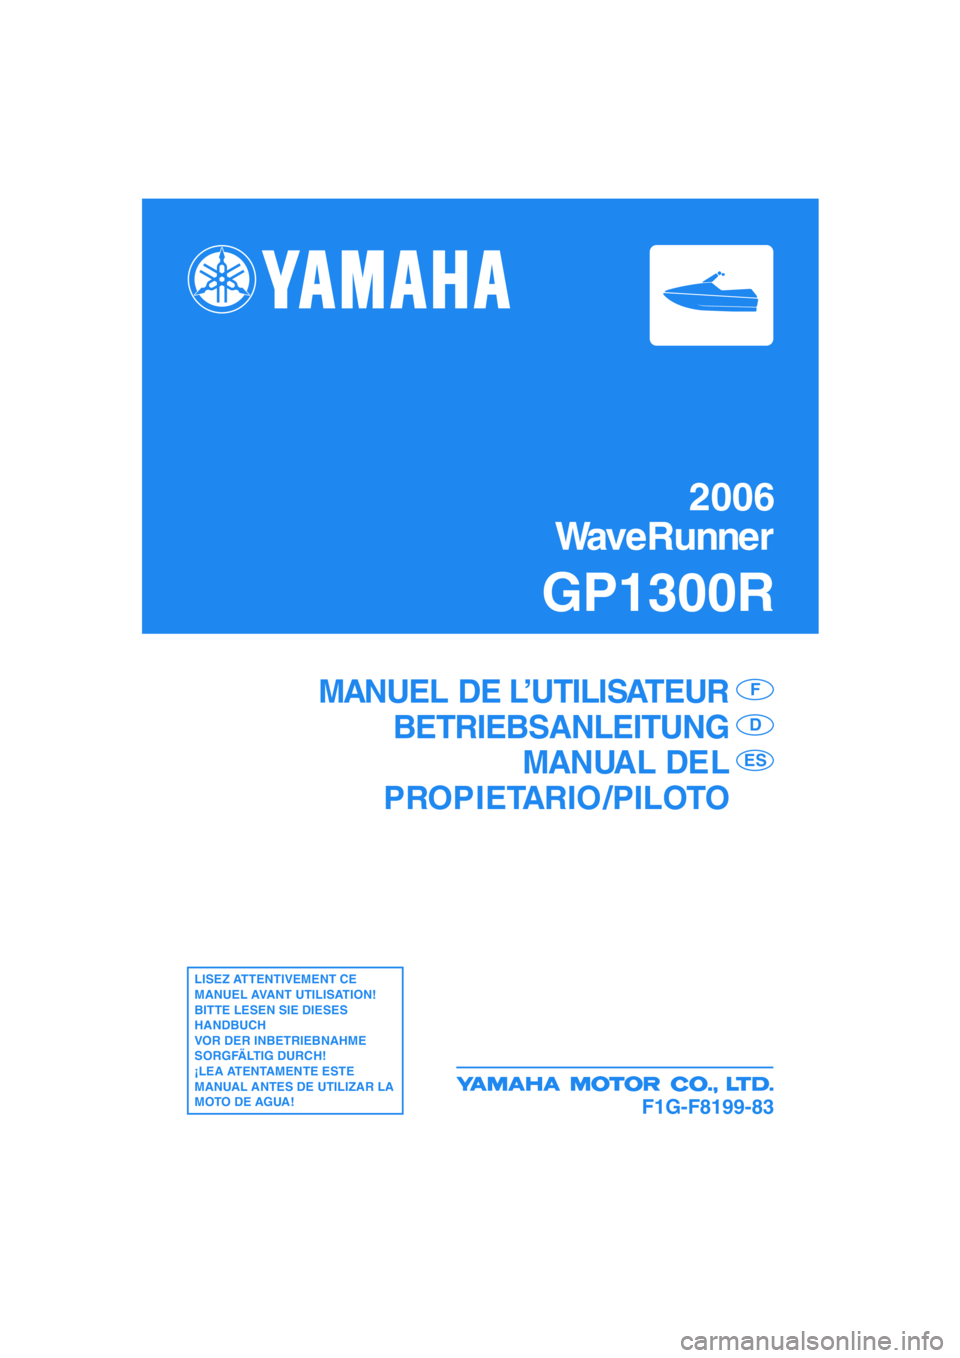 YAMAHA GP1300R 2006  Manuale de Empleo (in Spanish) 2006
WaveRunner
GP1300R
F1G-F8199-83
MANUEL DE L’UTILISATEUR
BETRIEBSANLEITUNG
MANUAL DEL
PROPIETARIO /PILOTOF
D
ES
LISEZ ATTENTIVEMENT CE 
MANUEL AVANT UTILISATION!
BITTE LESEN SIE DIESES 
HANDBUCH